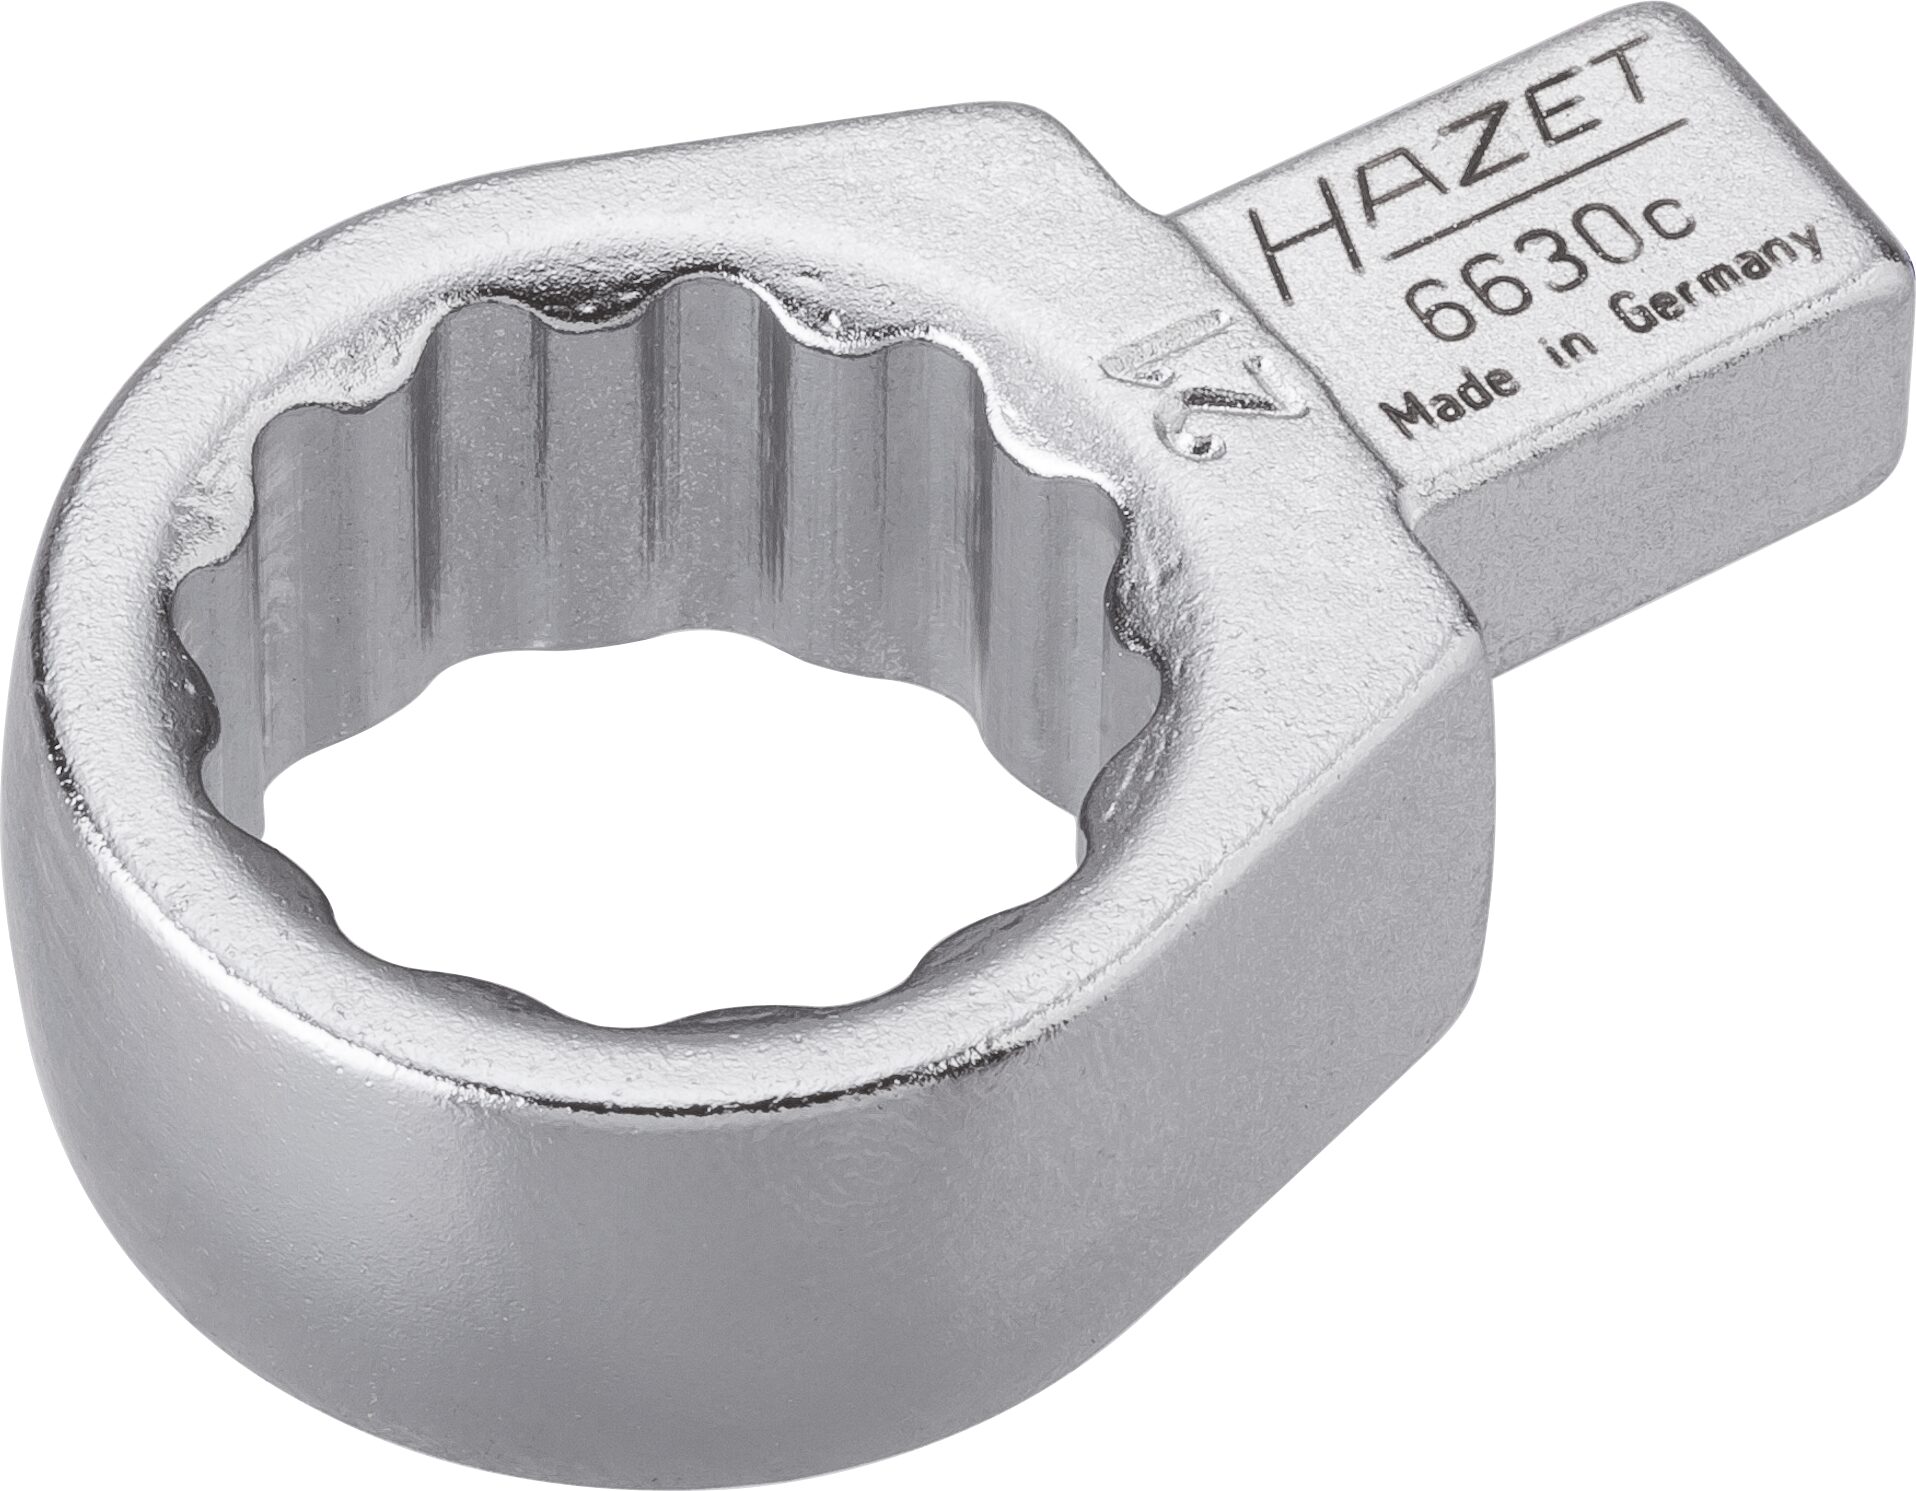 HAZET Einsteck-Ringschlüssel 6630C-21 · Einsteck-Vierkant 9 x 12 mm · Außen Doppel-Sechskant-Tractionsprofil · 21 mm